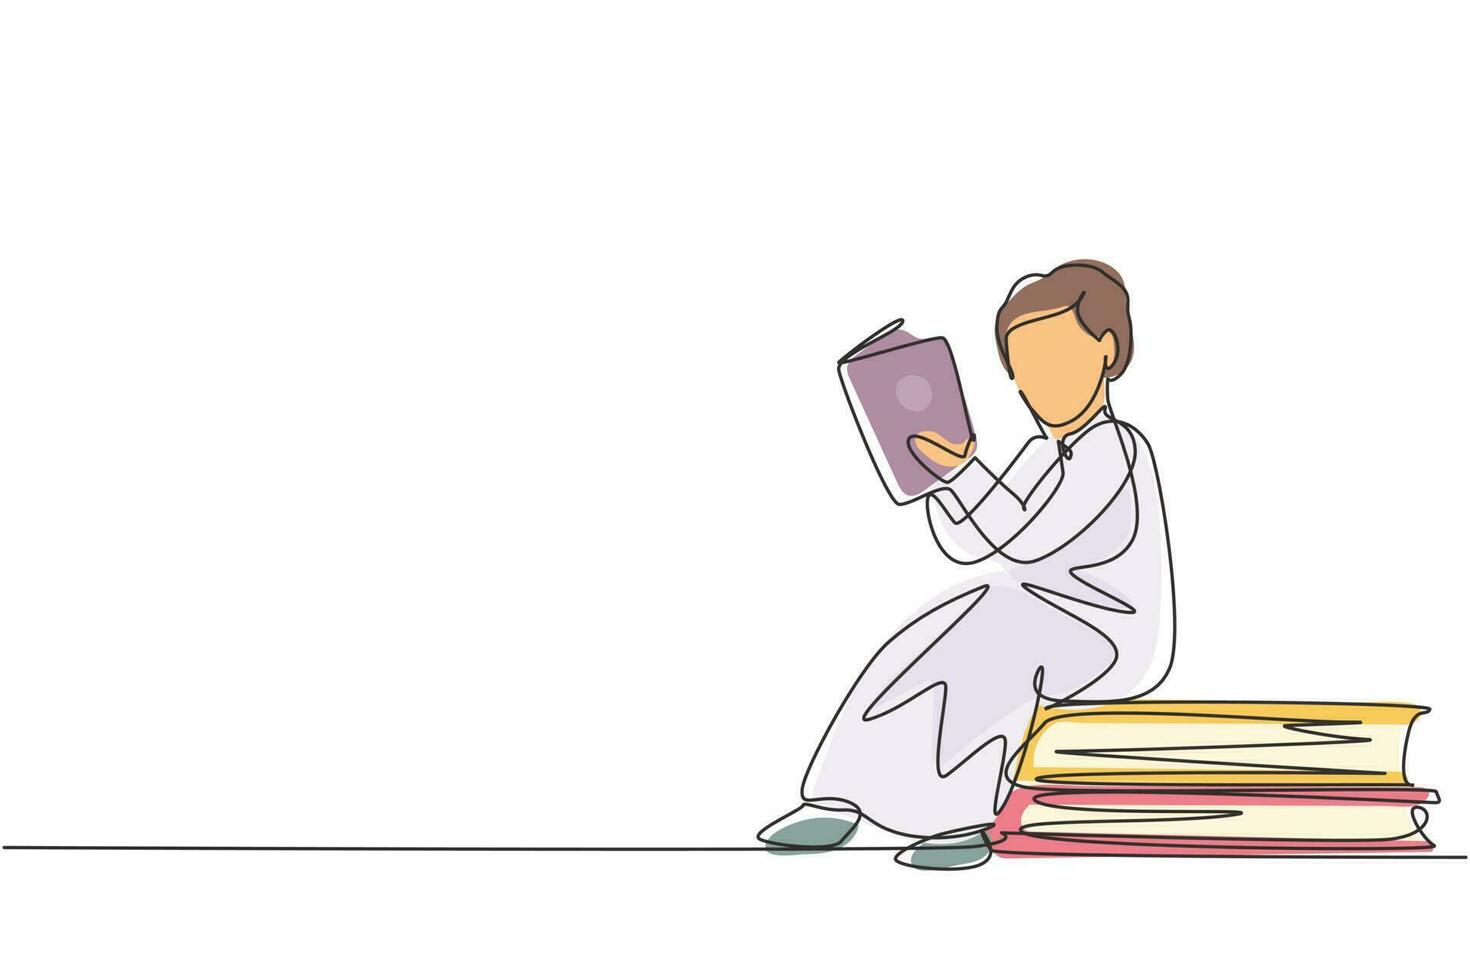 enkele doorlopende lijntekening Arabische kleine jongen lezen, leren en zittend op grote boeken. thuis studeren. slimme student, onderwijsconcept. dynamische één lijn trekken grafisch ontwerp vectorillustratie vector